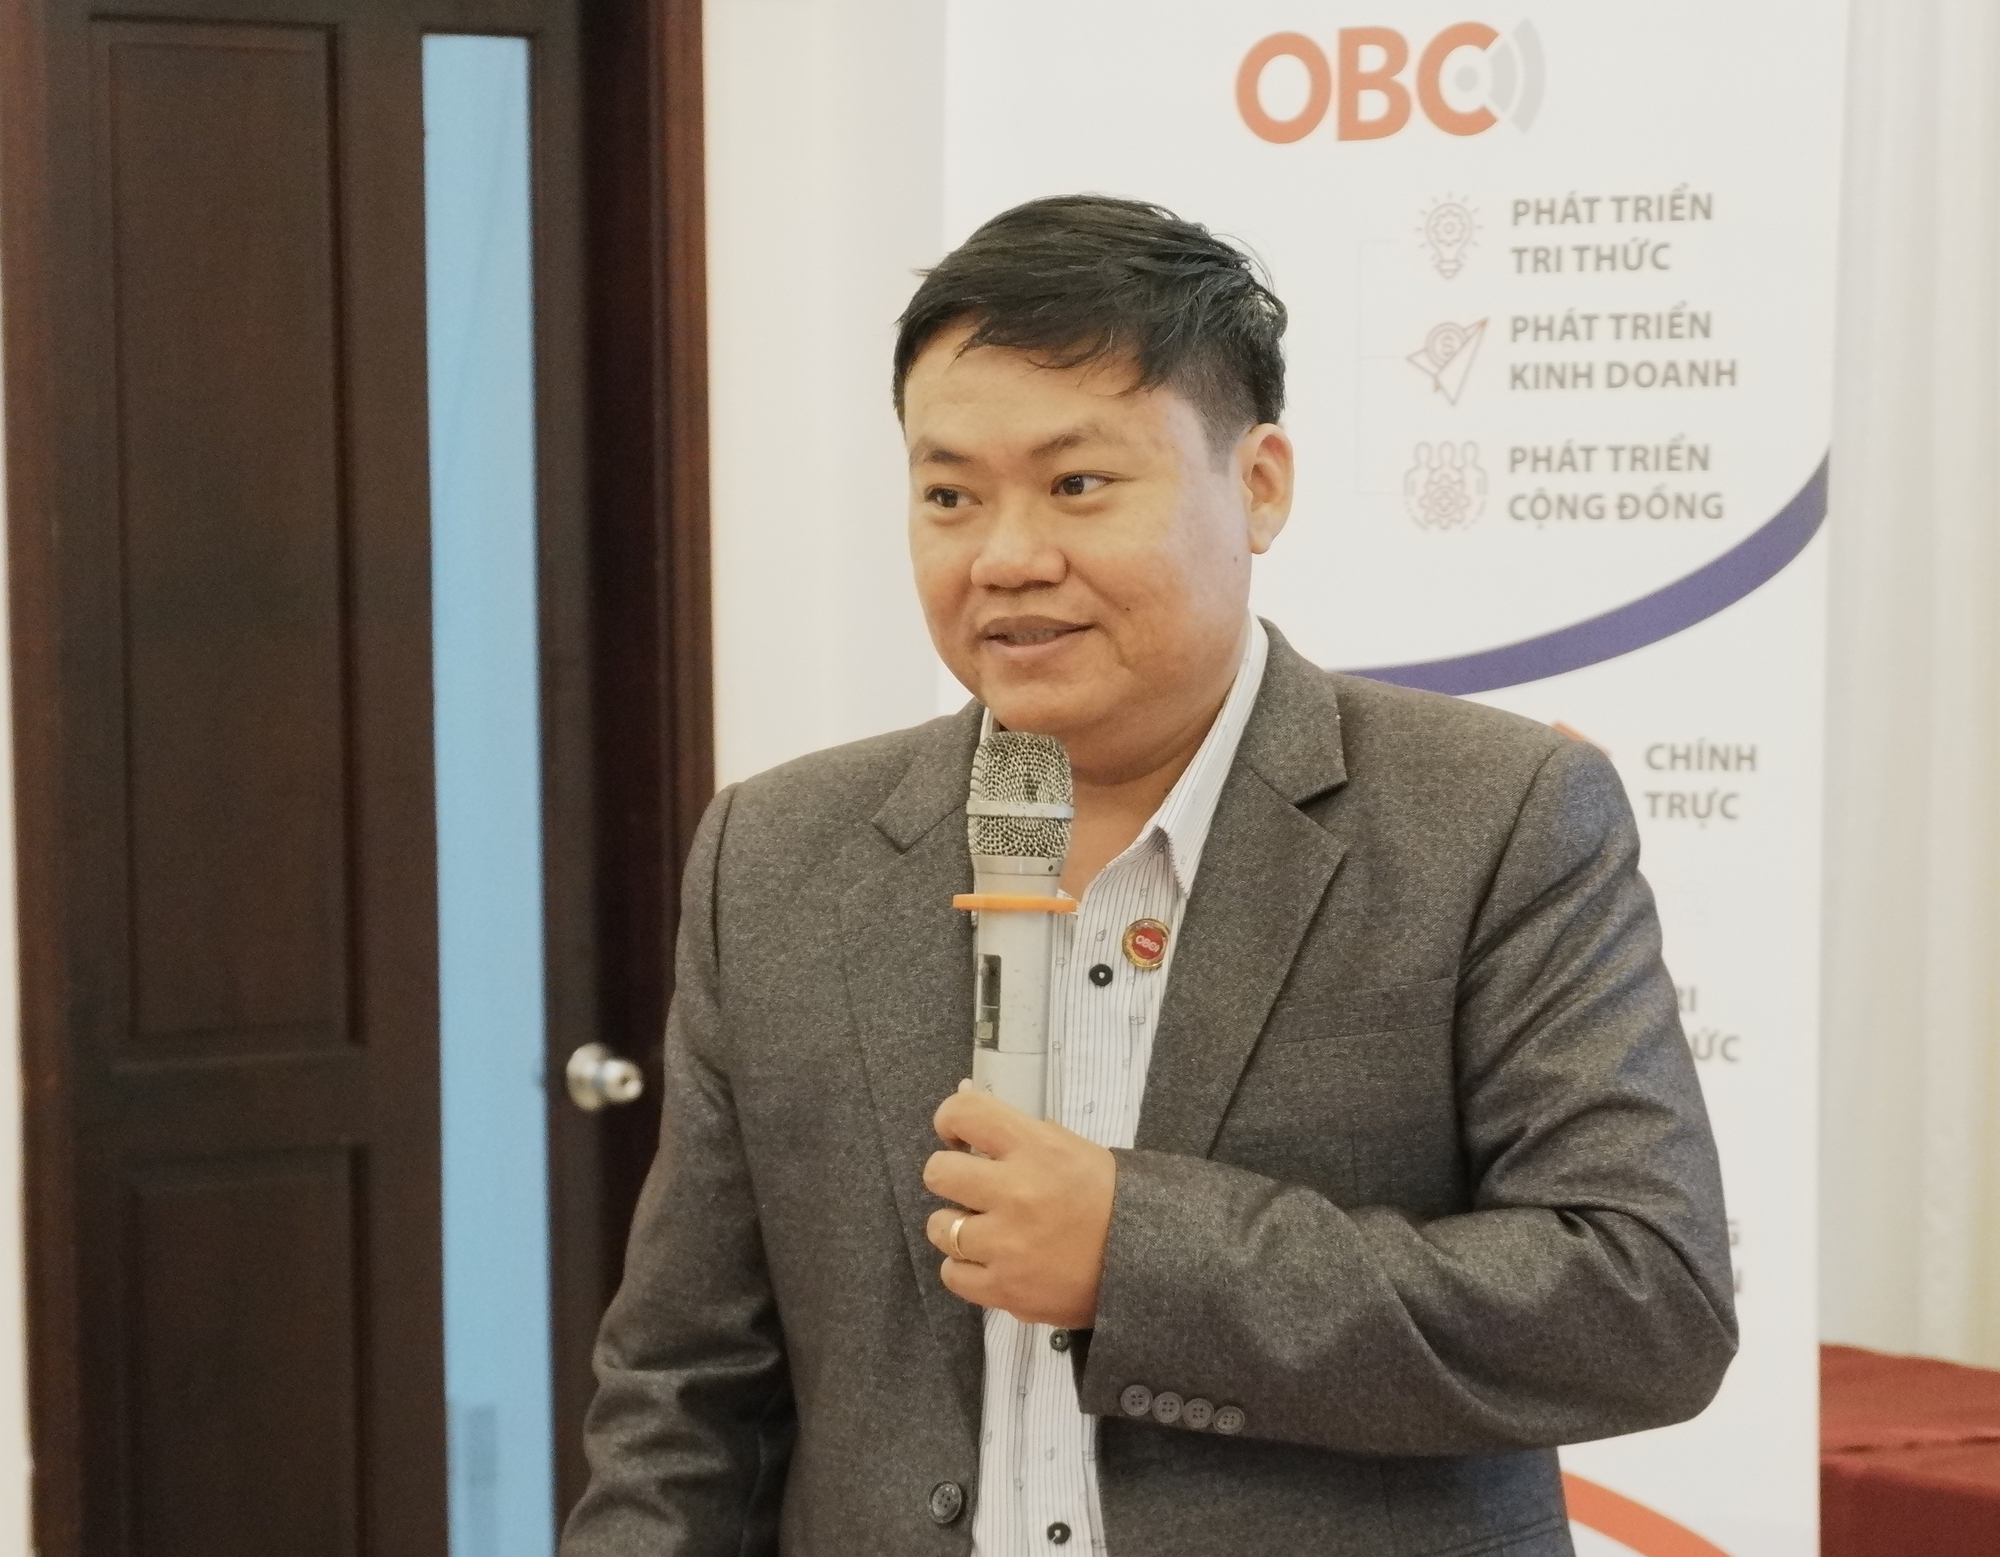 Tham gia cộng đồng doanh nghiệp OBC Bình Thuận, doanh nghiệp được hưởng lợi gì? - Ảnh 2.